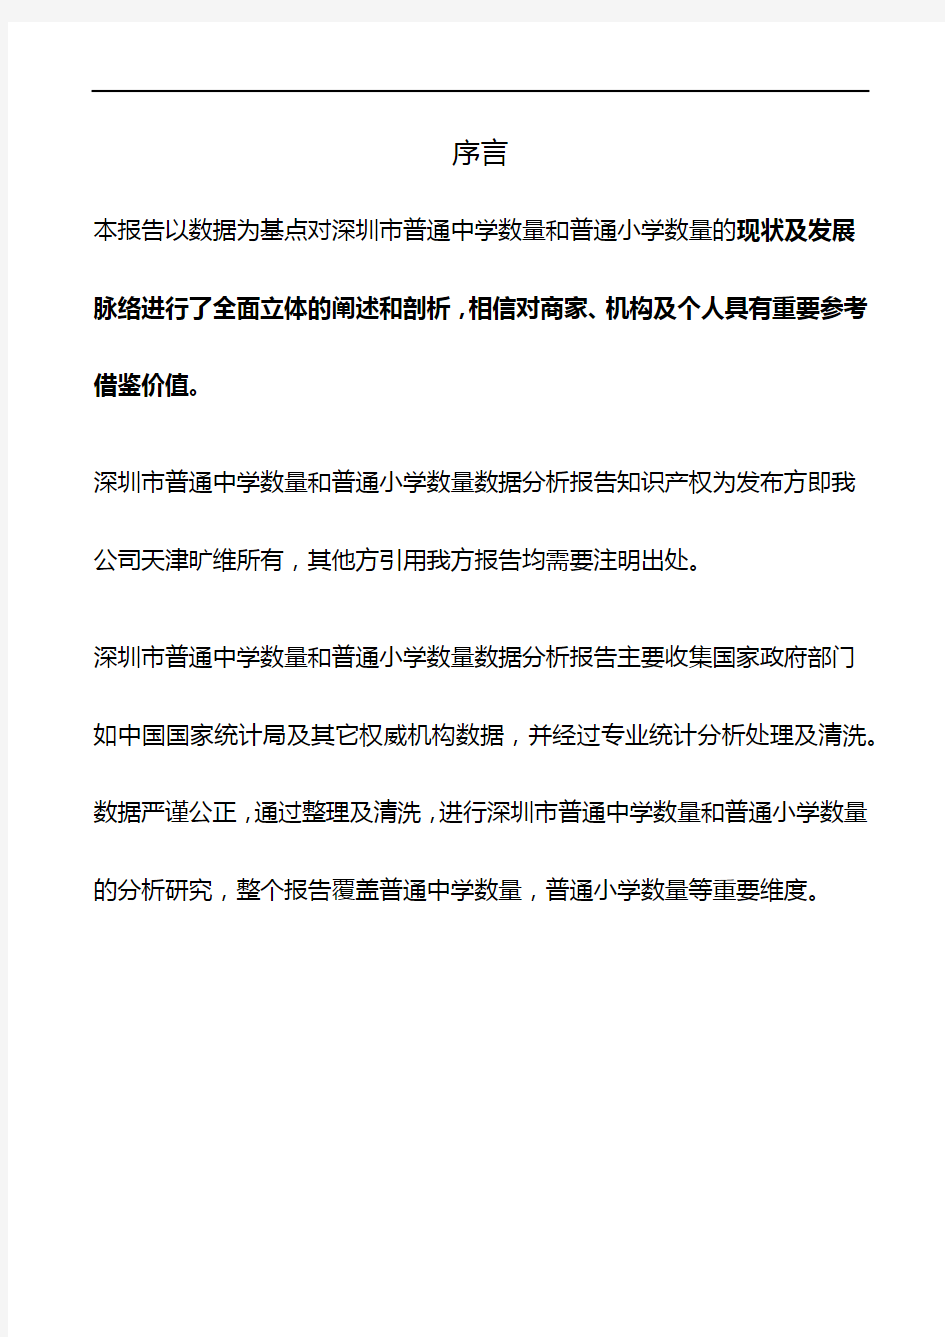 深圳市(全市)普通中学数量和普通小学数量3年数据分析报告2019版